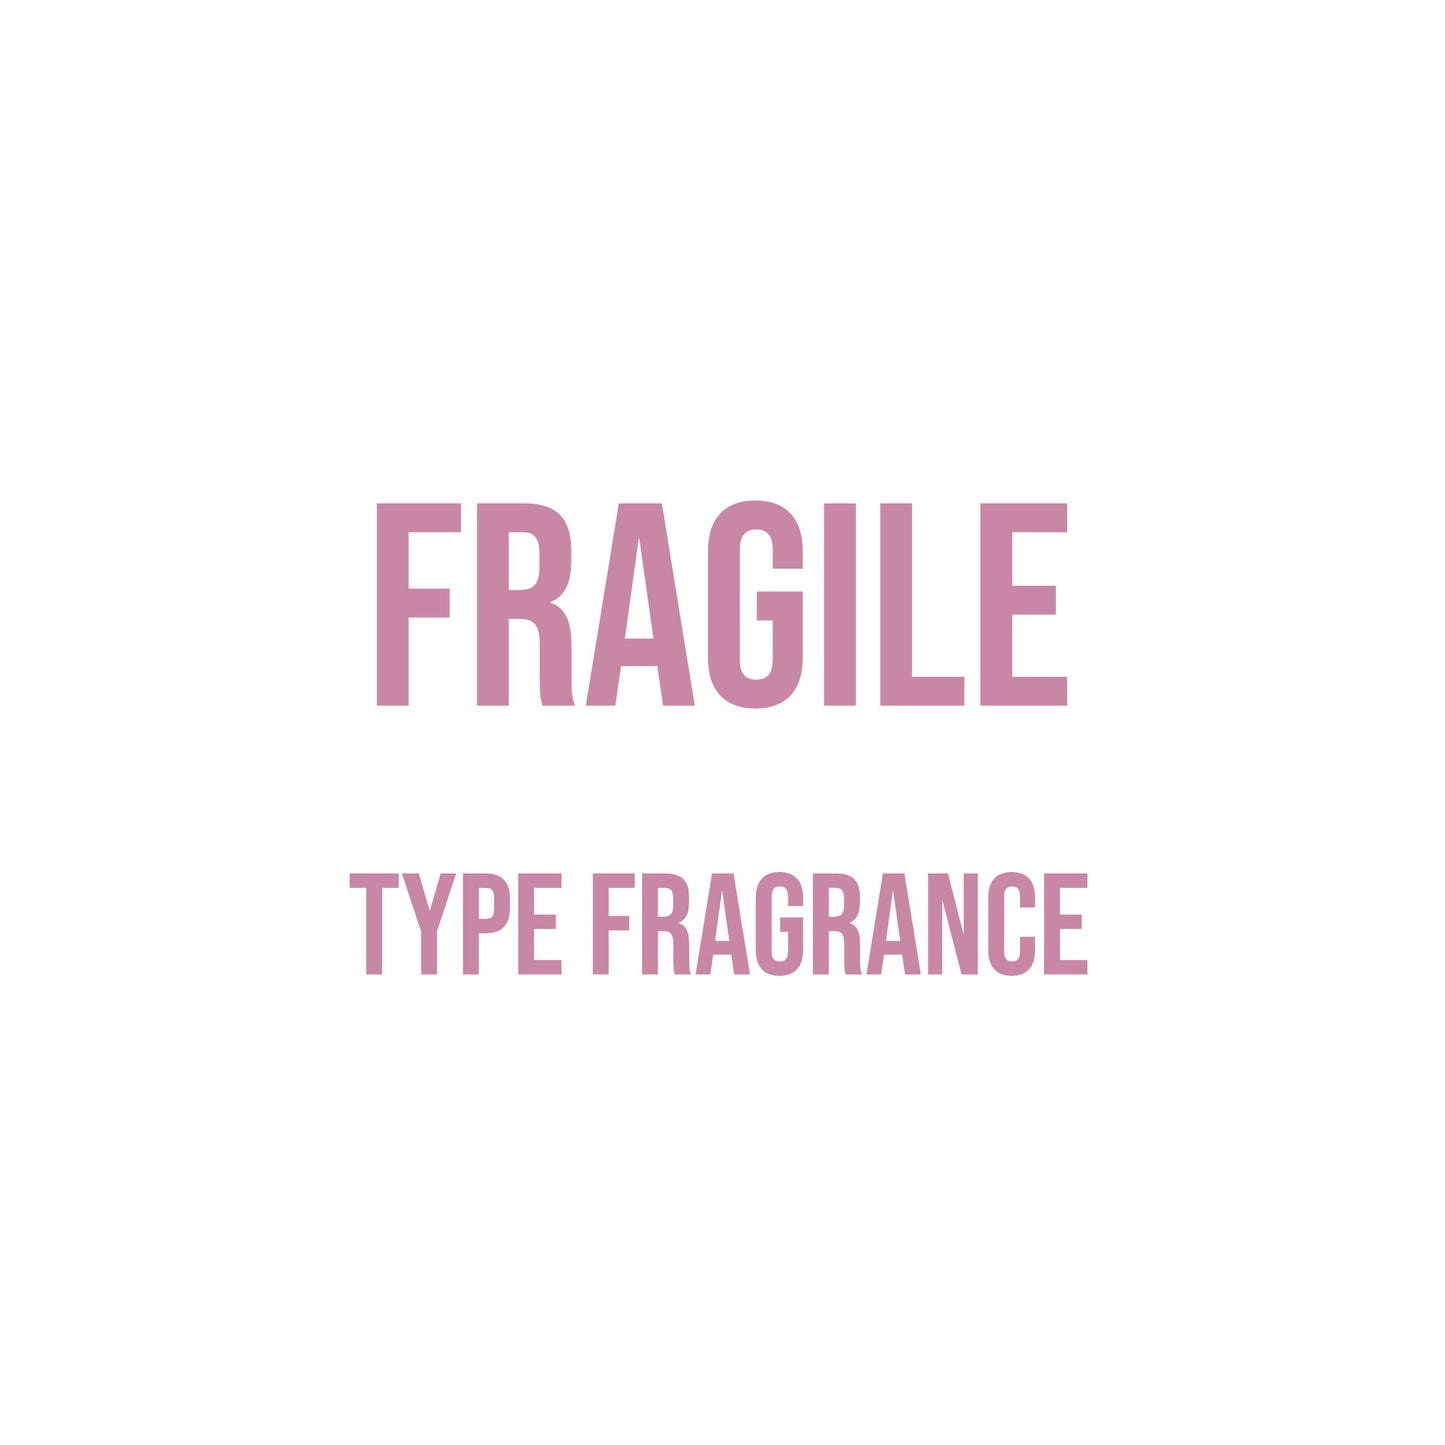 Fragile Type Fragrance